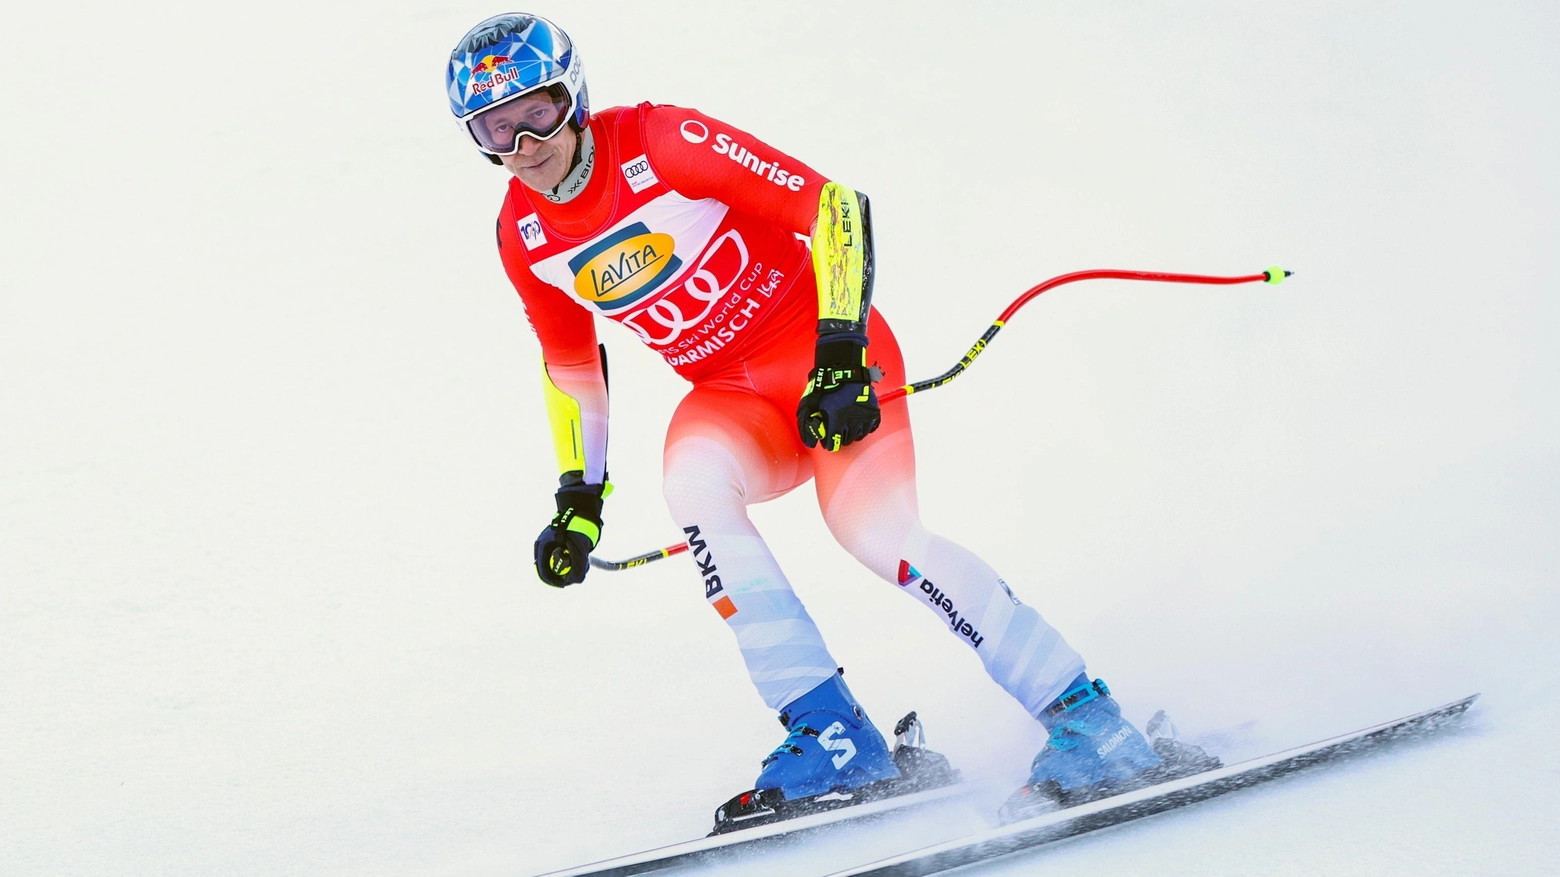 Dopo il surreale slalom di Chamonix la Coppa del mondo fa tappa in Bulgaria per uno slalom gigante: Odermatt grande favorito